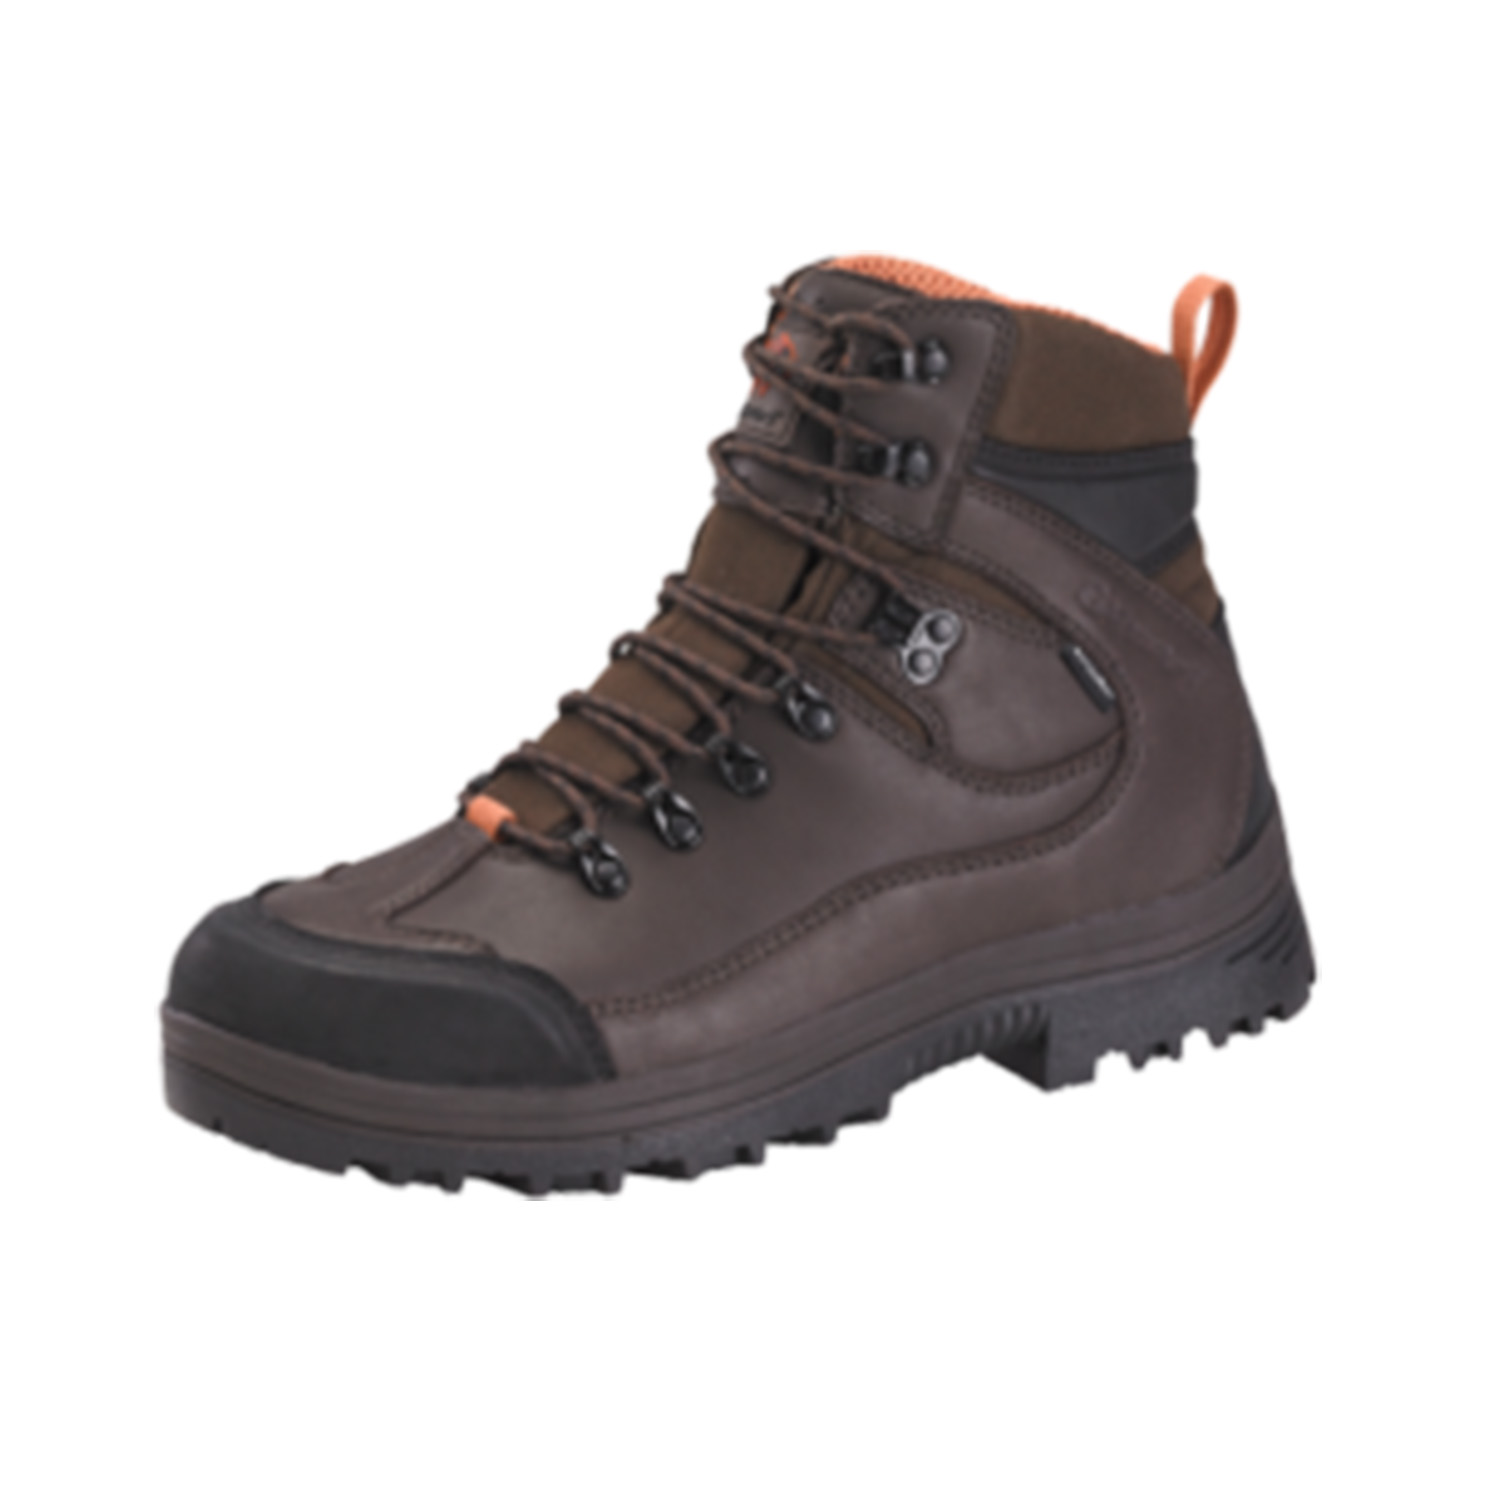 Gateway1 Jagdstiefel Walking Boot II - Schuhe & Stiefel